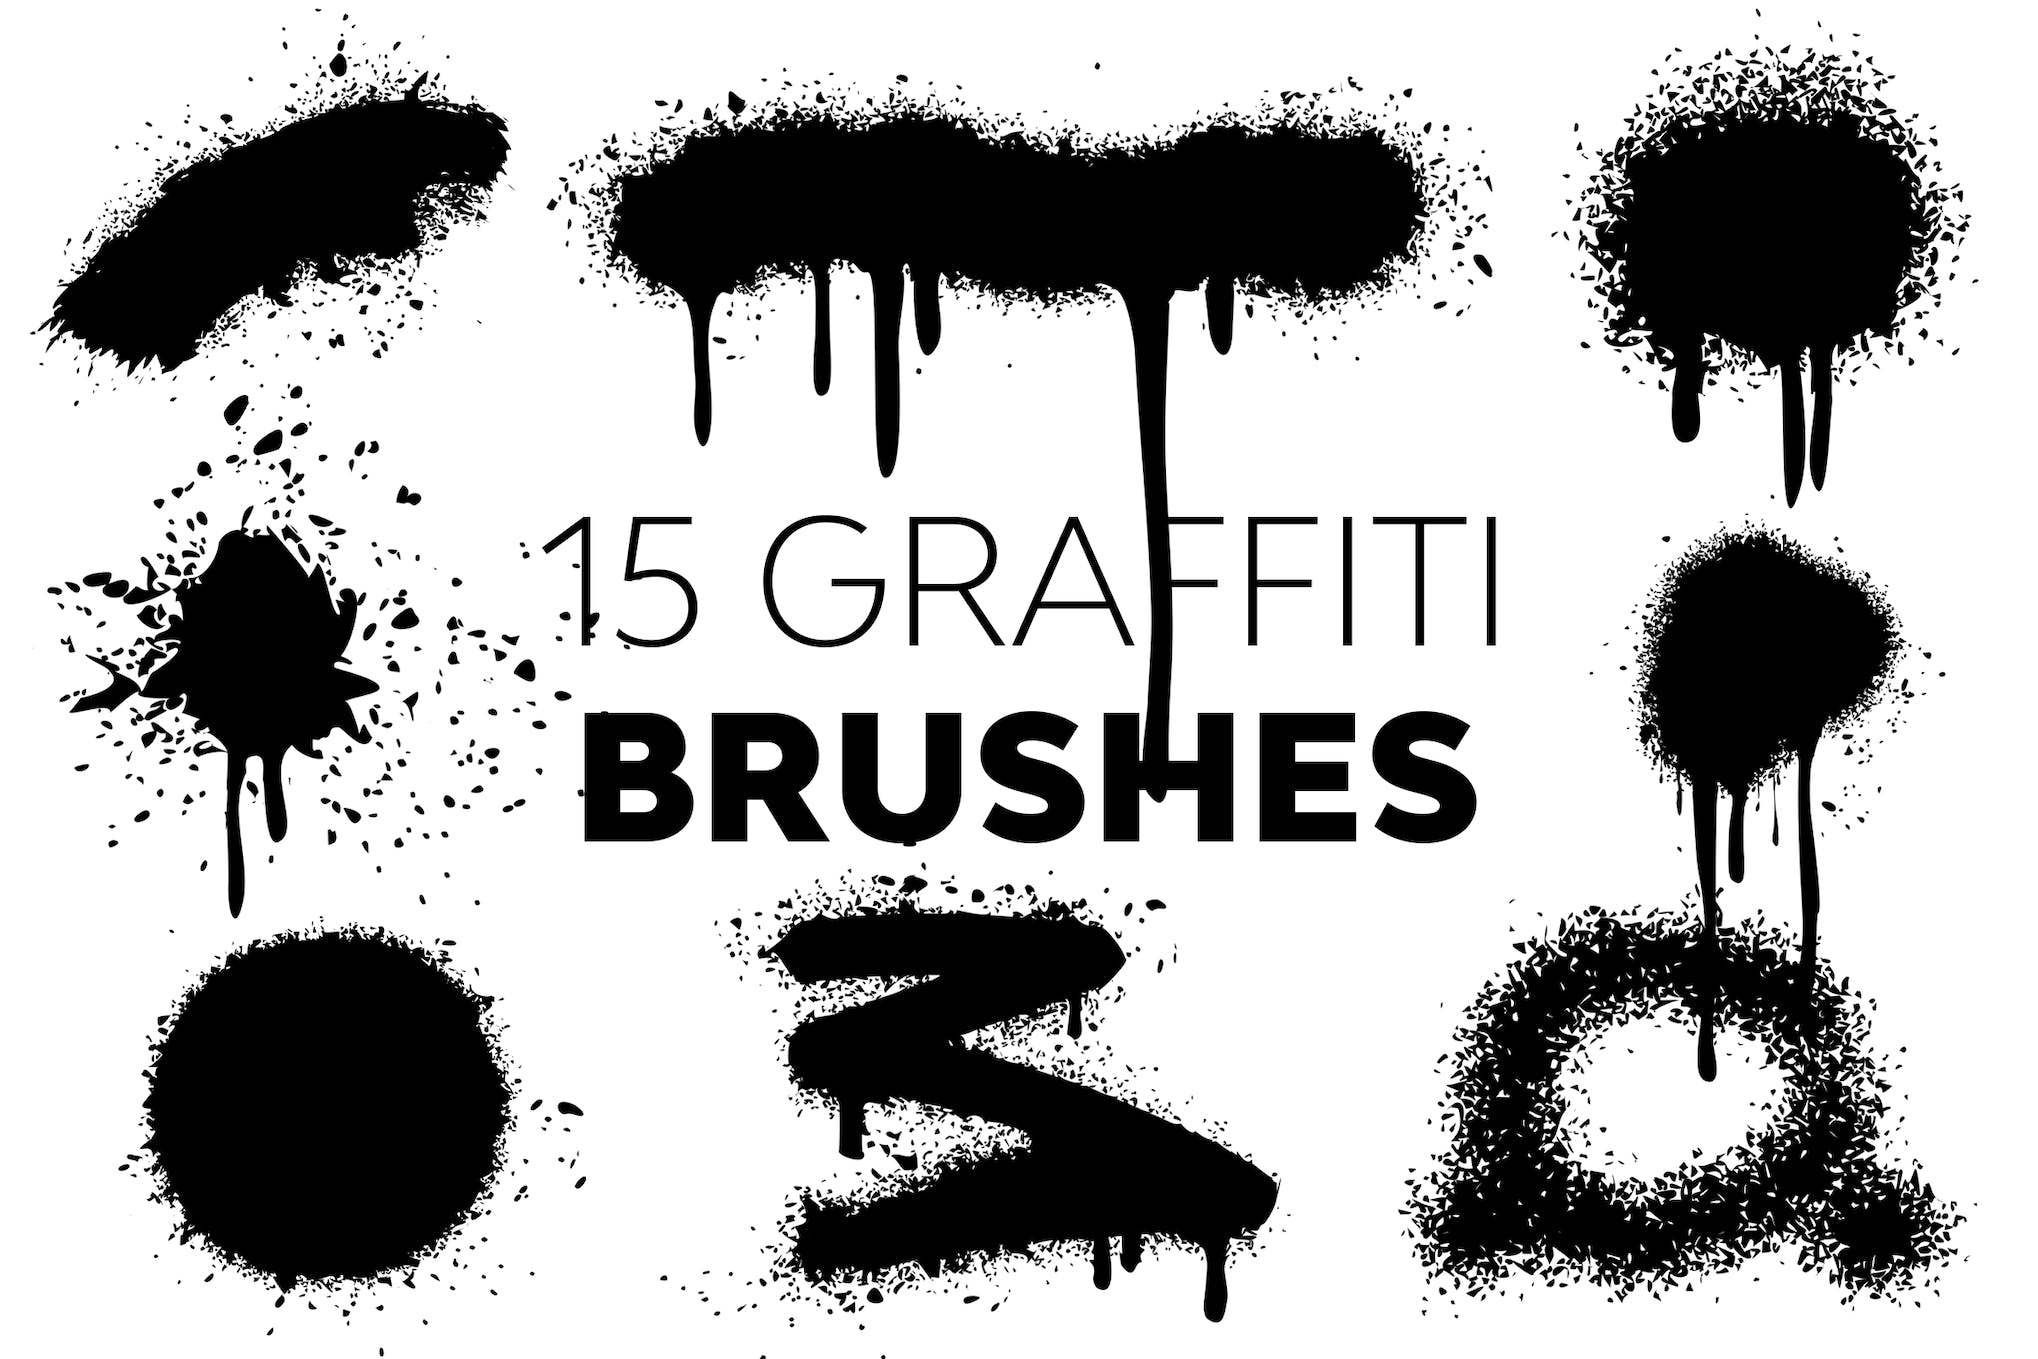 15 Graffiti Brushes for Photoshop